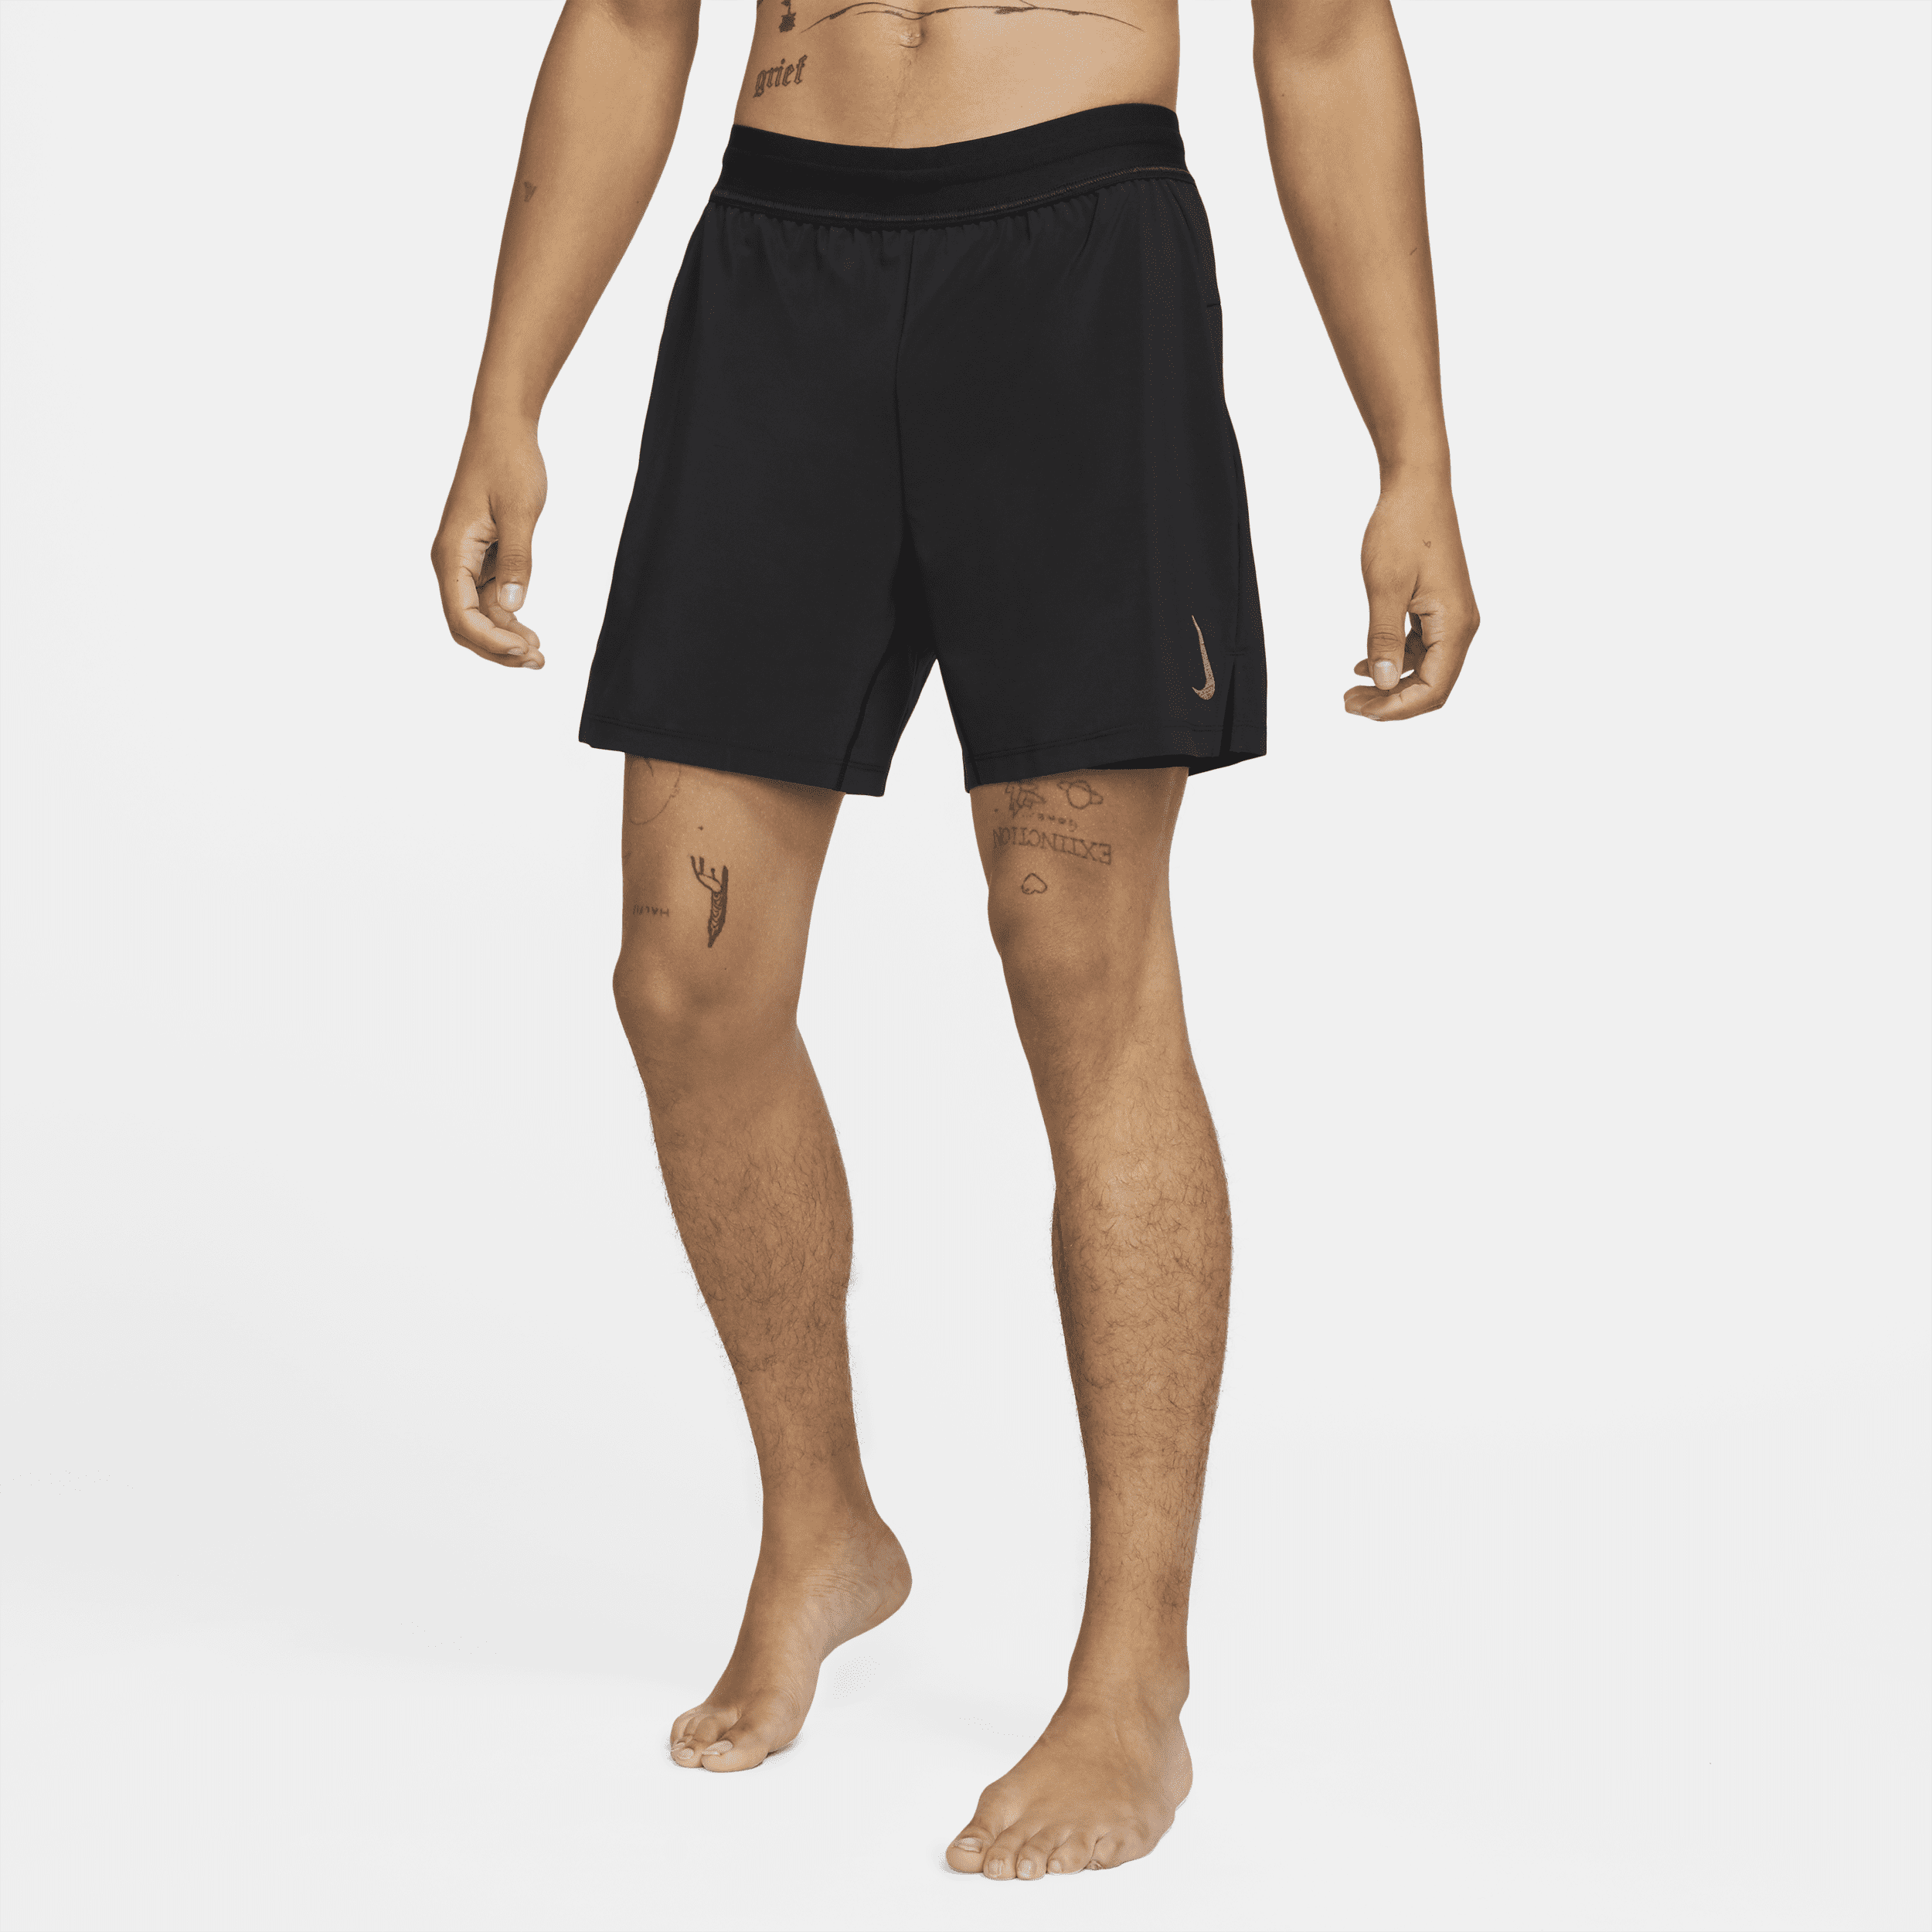 Nike Yoga Pantalón corto 2 en 1 - Hombre - Negro